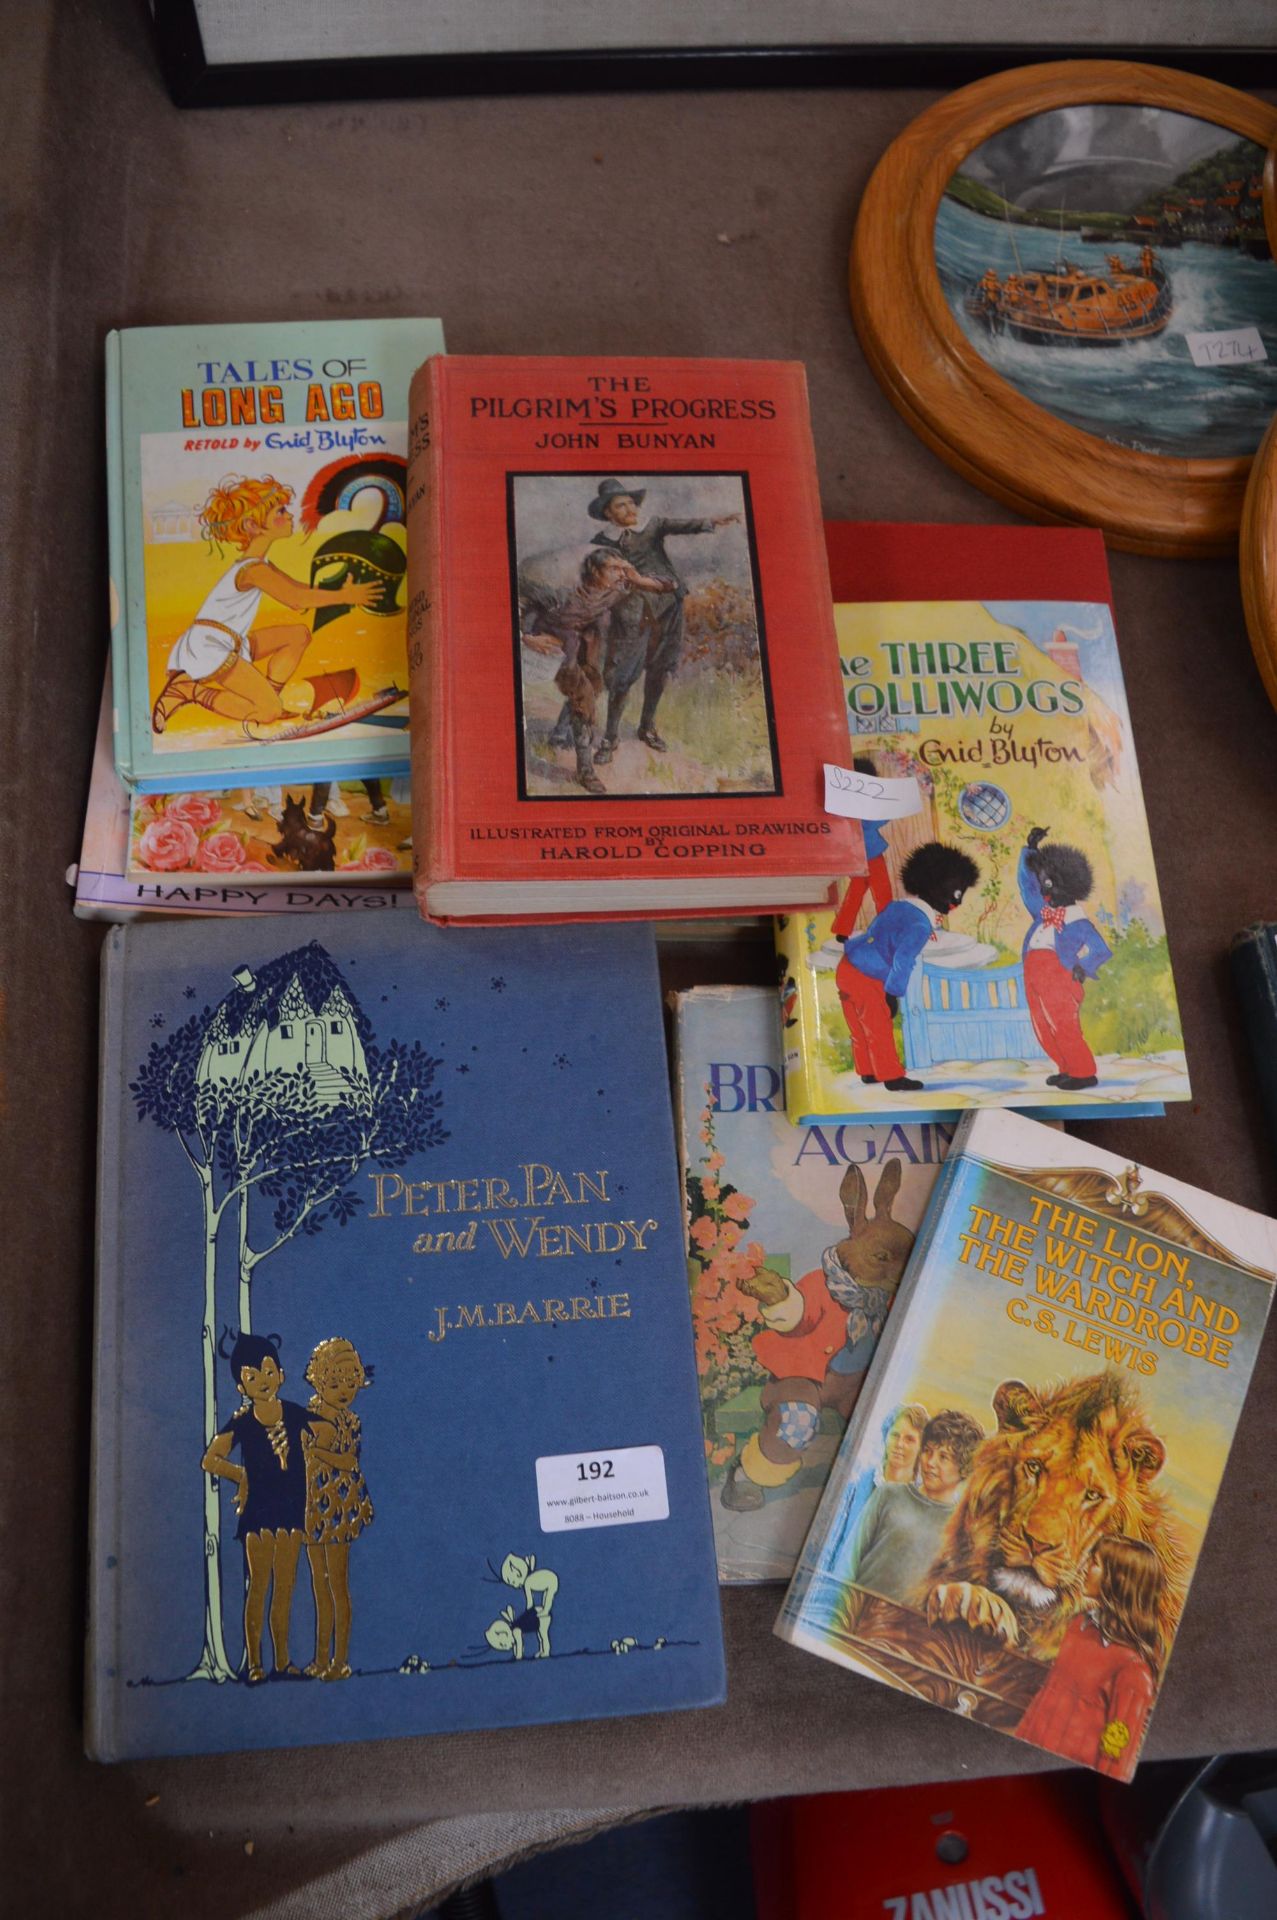 Peter Pan Books, etc.